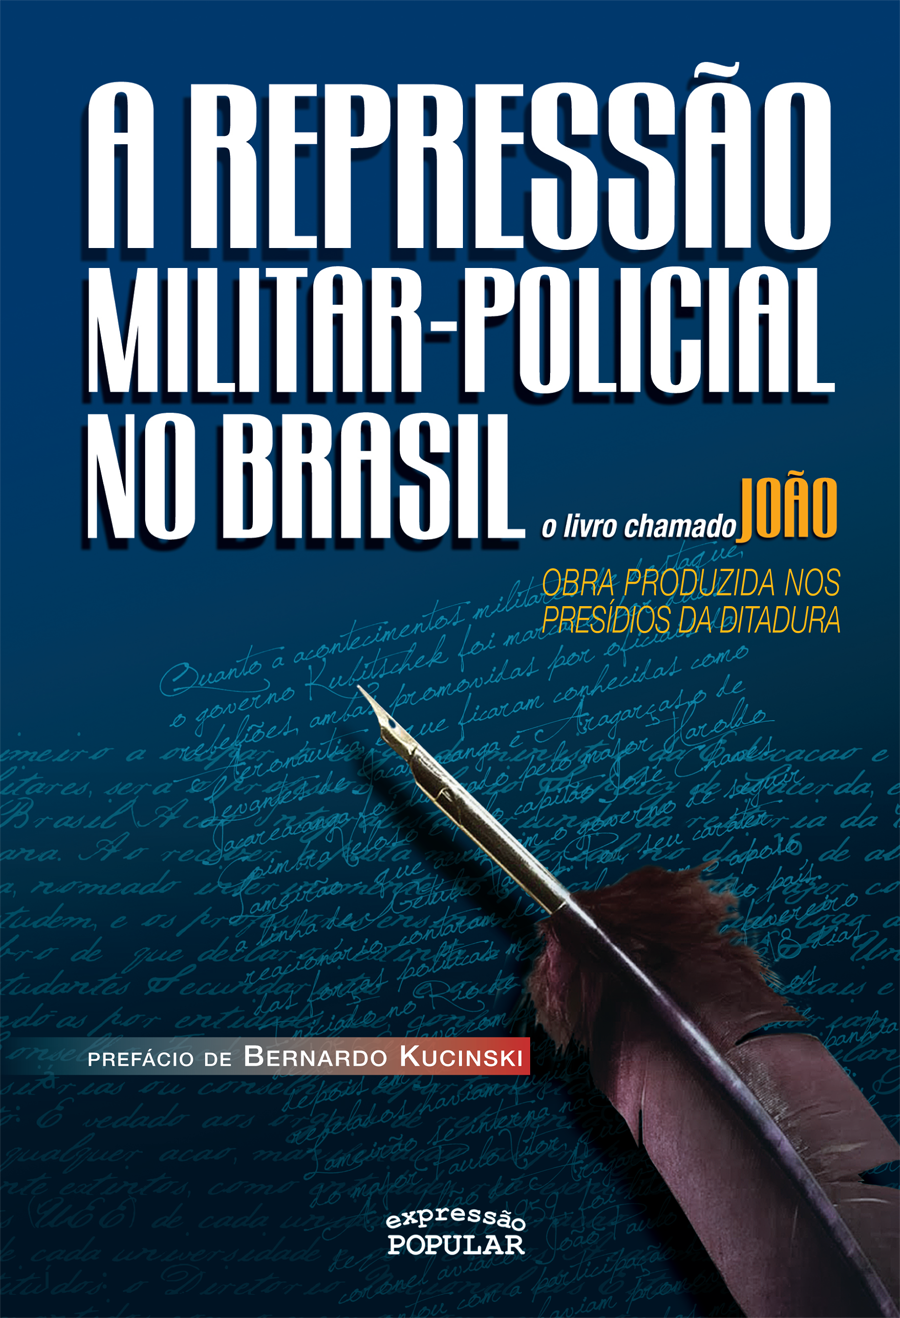 “A Repressão Militar-Policial no Brasil: o livro chamado João”